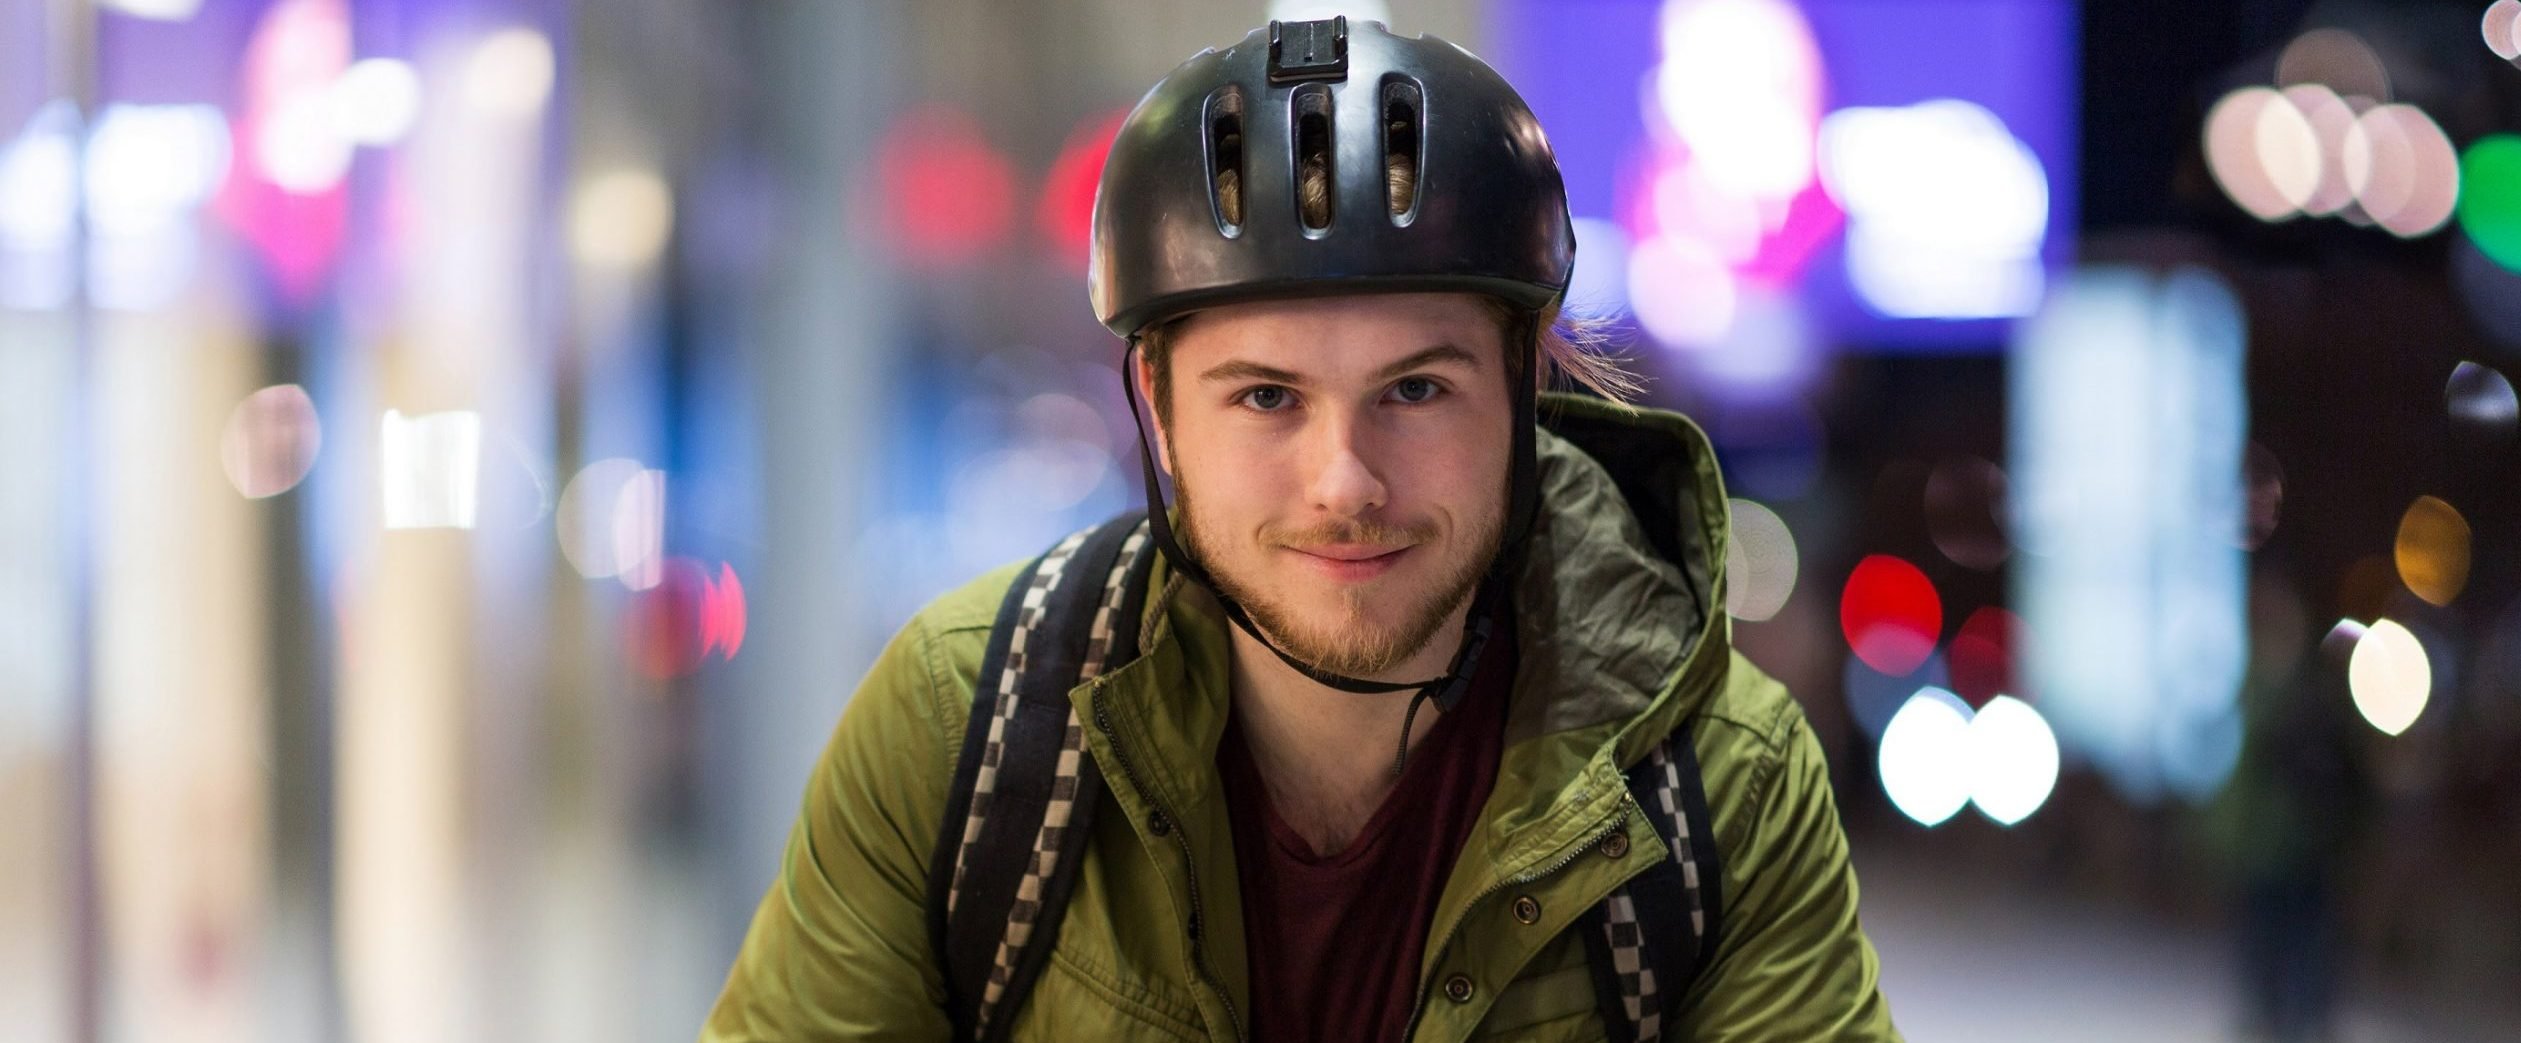 La plupart des jeunes préfèrent ne pas porter de casque de vélo